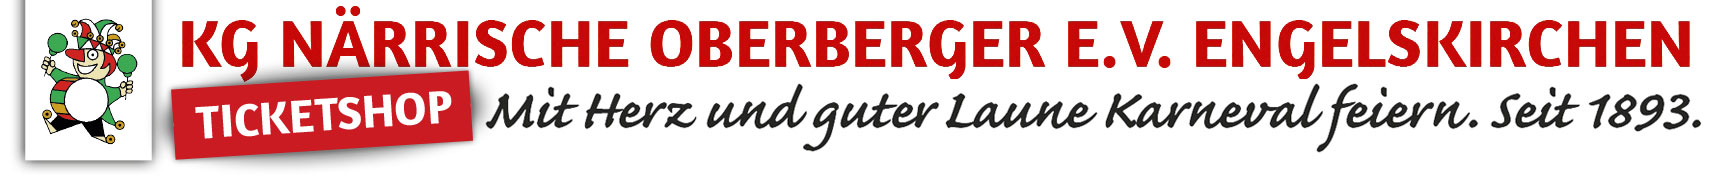 Karnevalgesellschaft Närrische Oberberger e.V. Logo